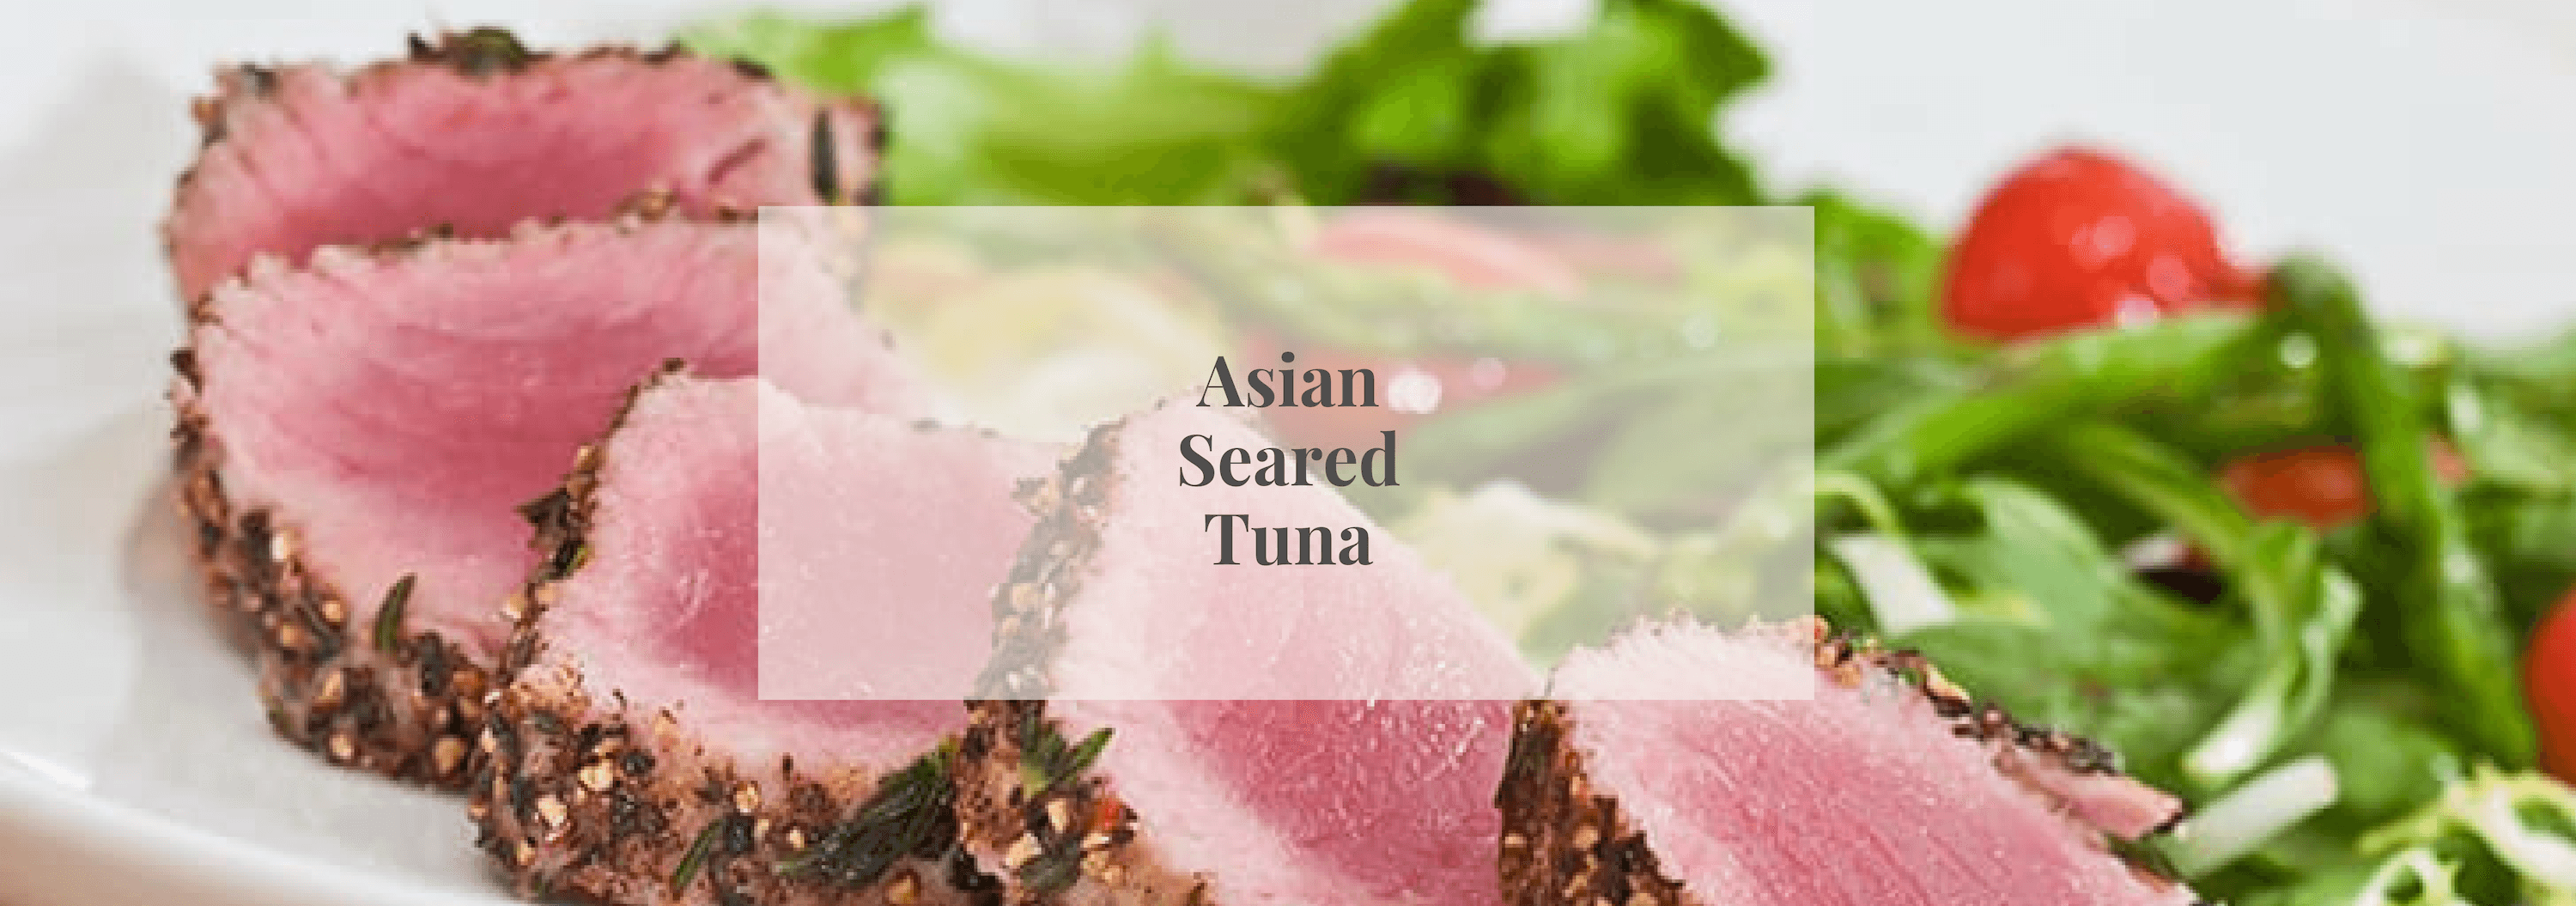 Asian Seared Tuna - Numi